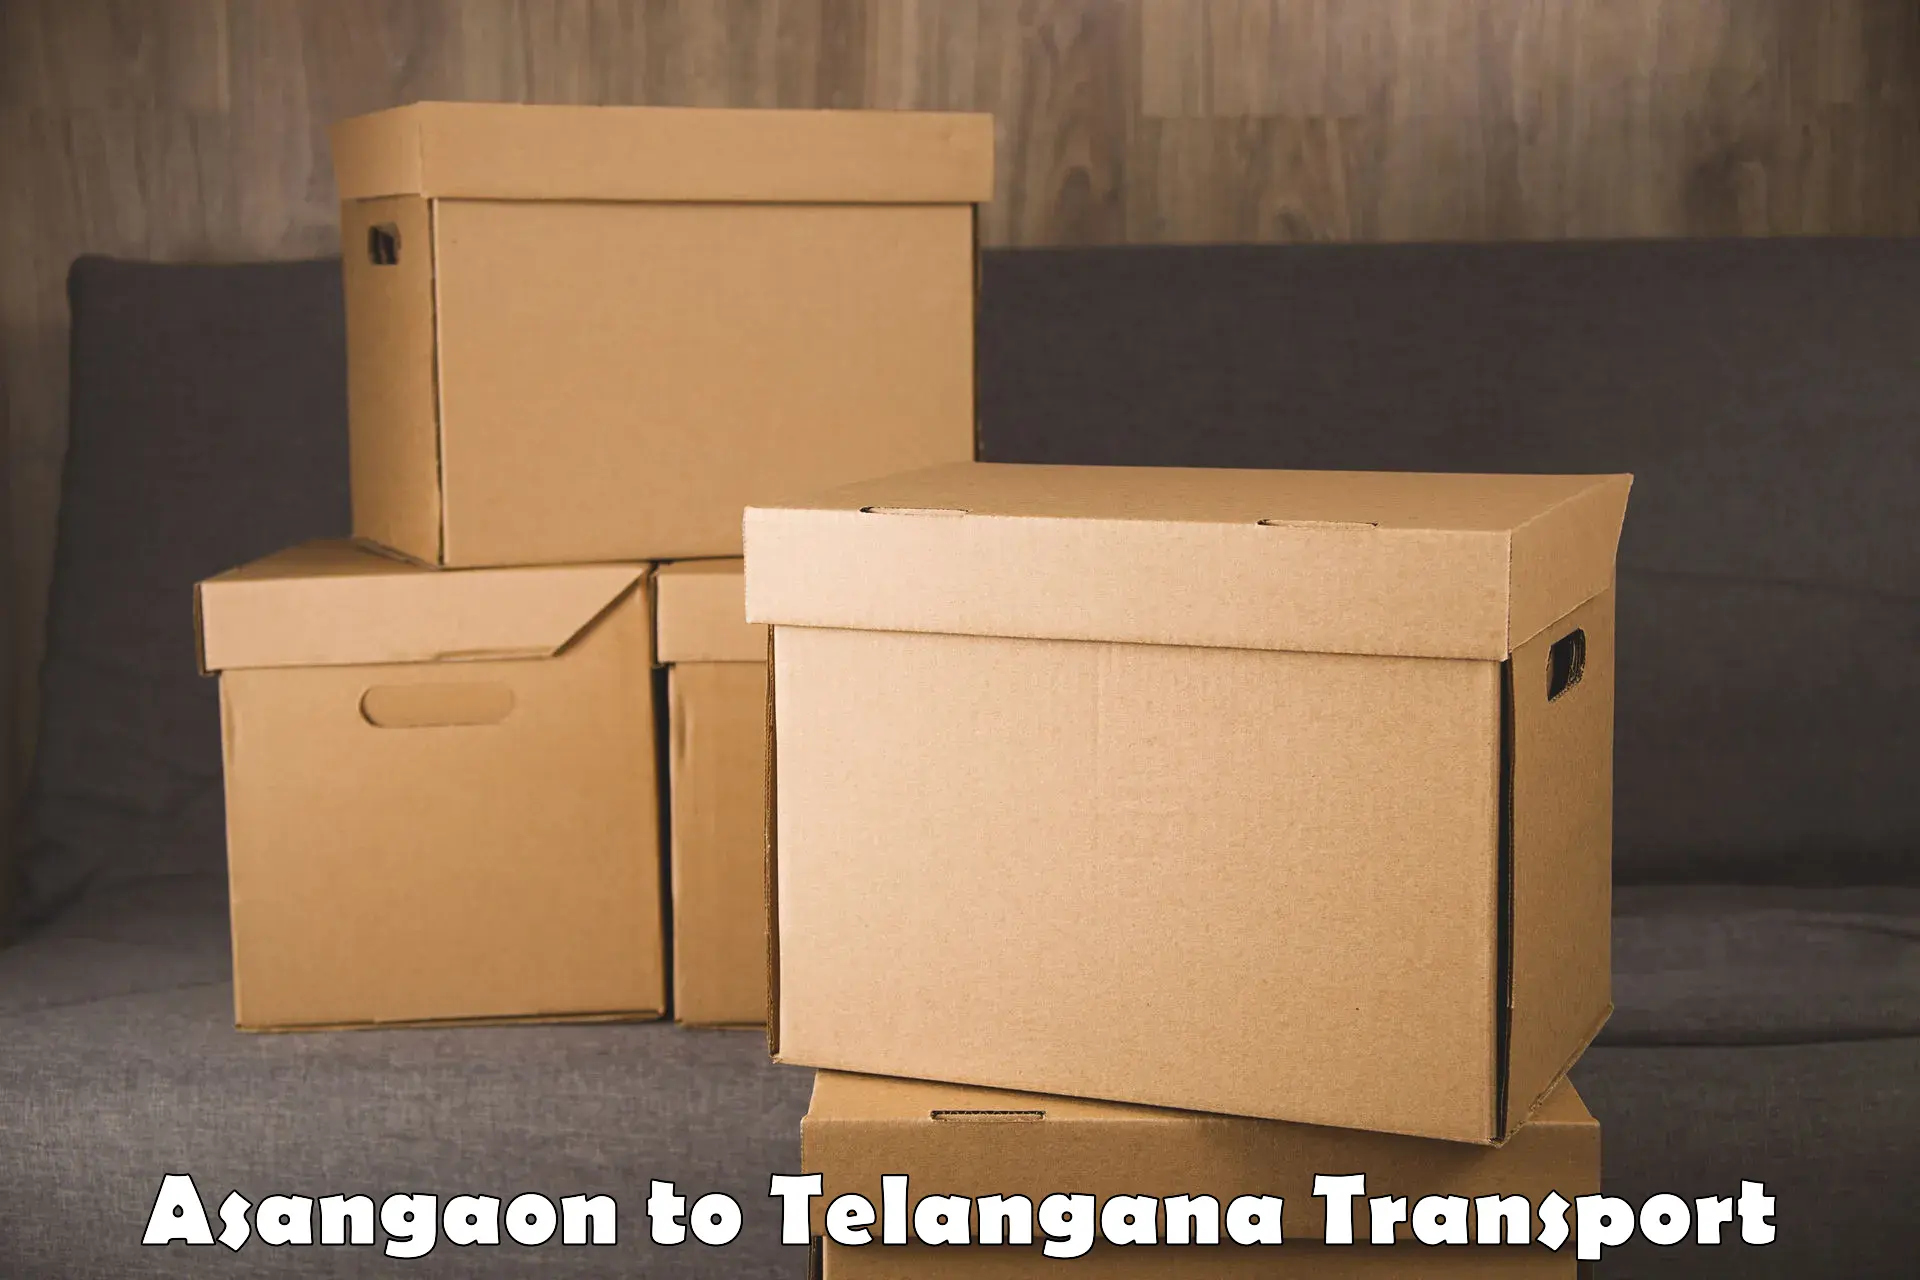 Express transport services Asangaon to Karimnagar